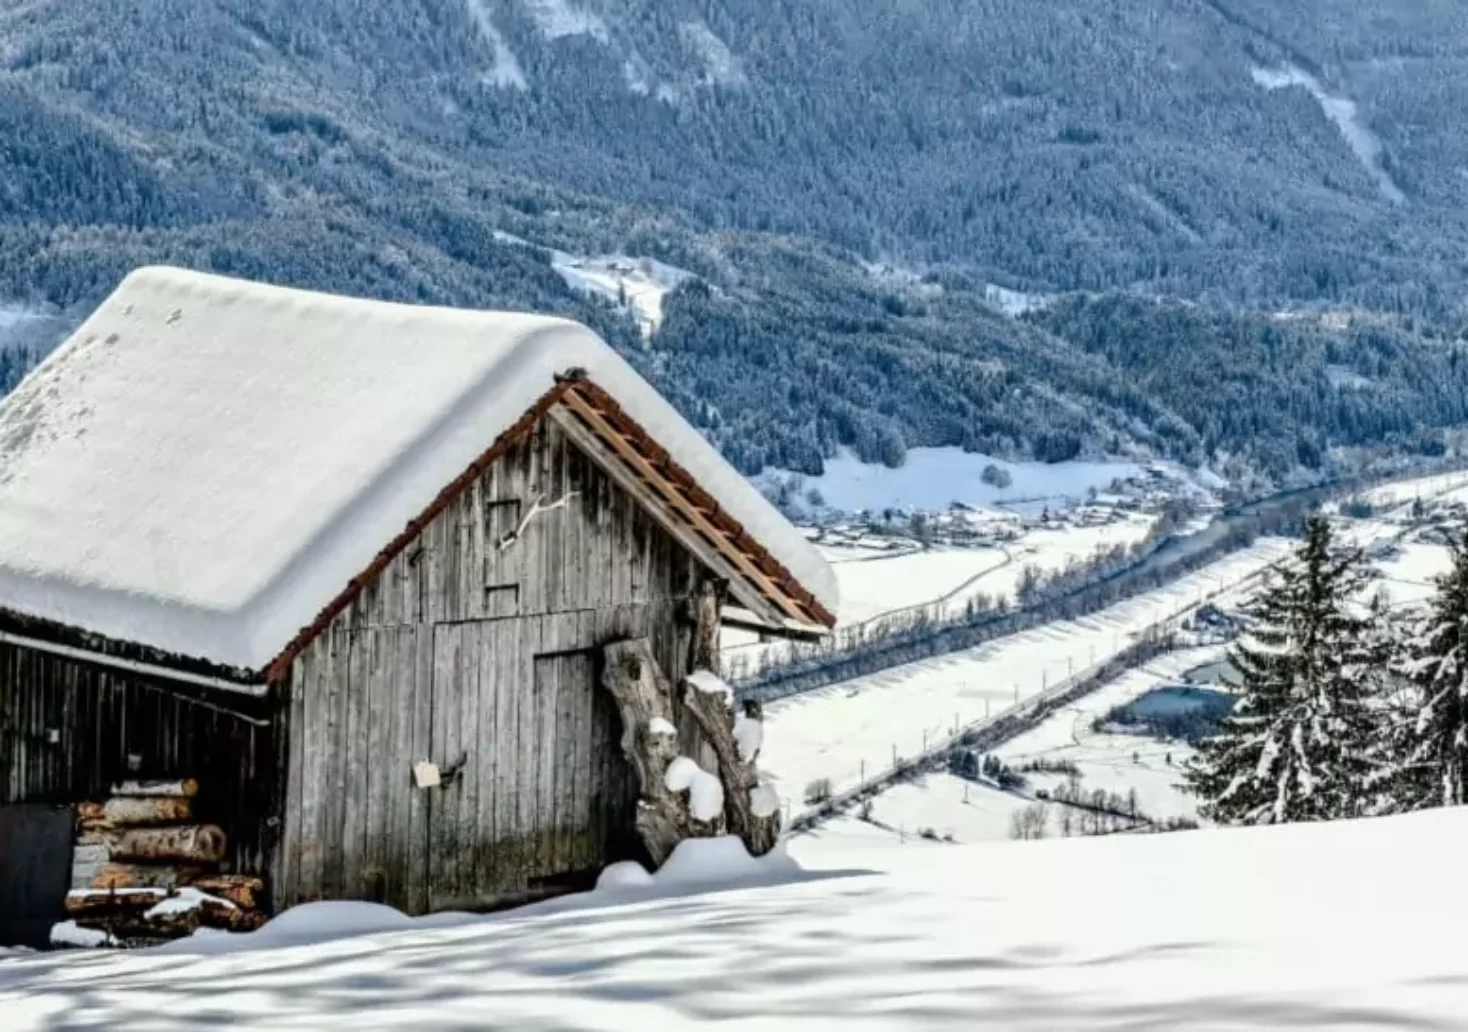 Foto in Beitrag von 5min.at: Zu sehen ist eine Hütte am Berg, in Schnee gehüllt.